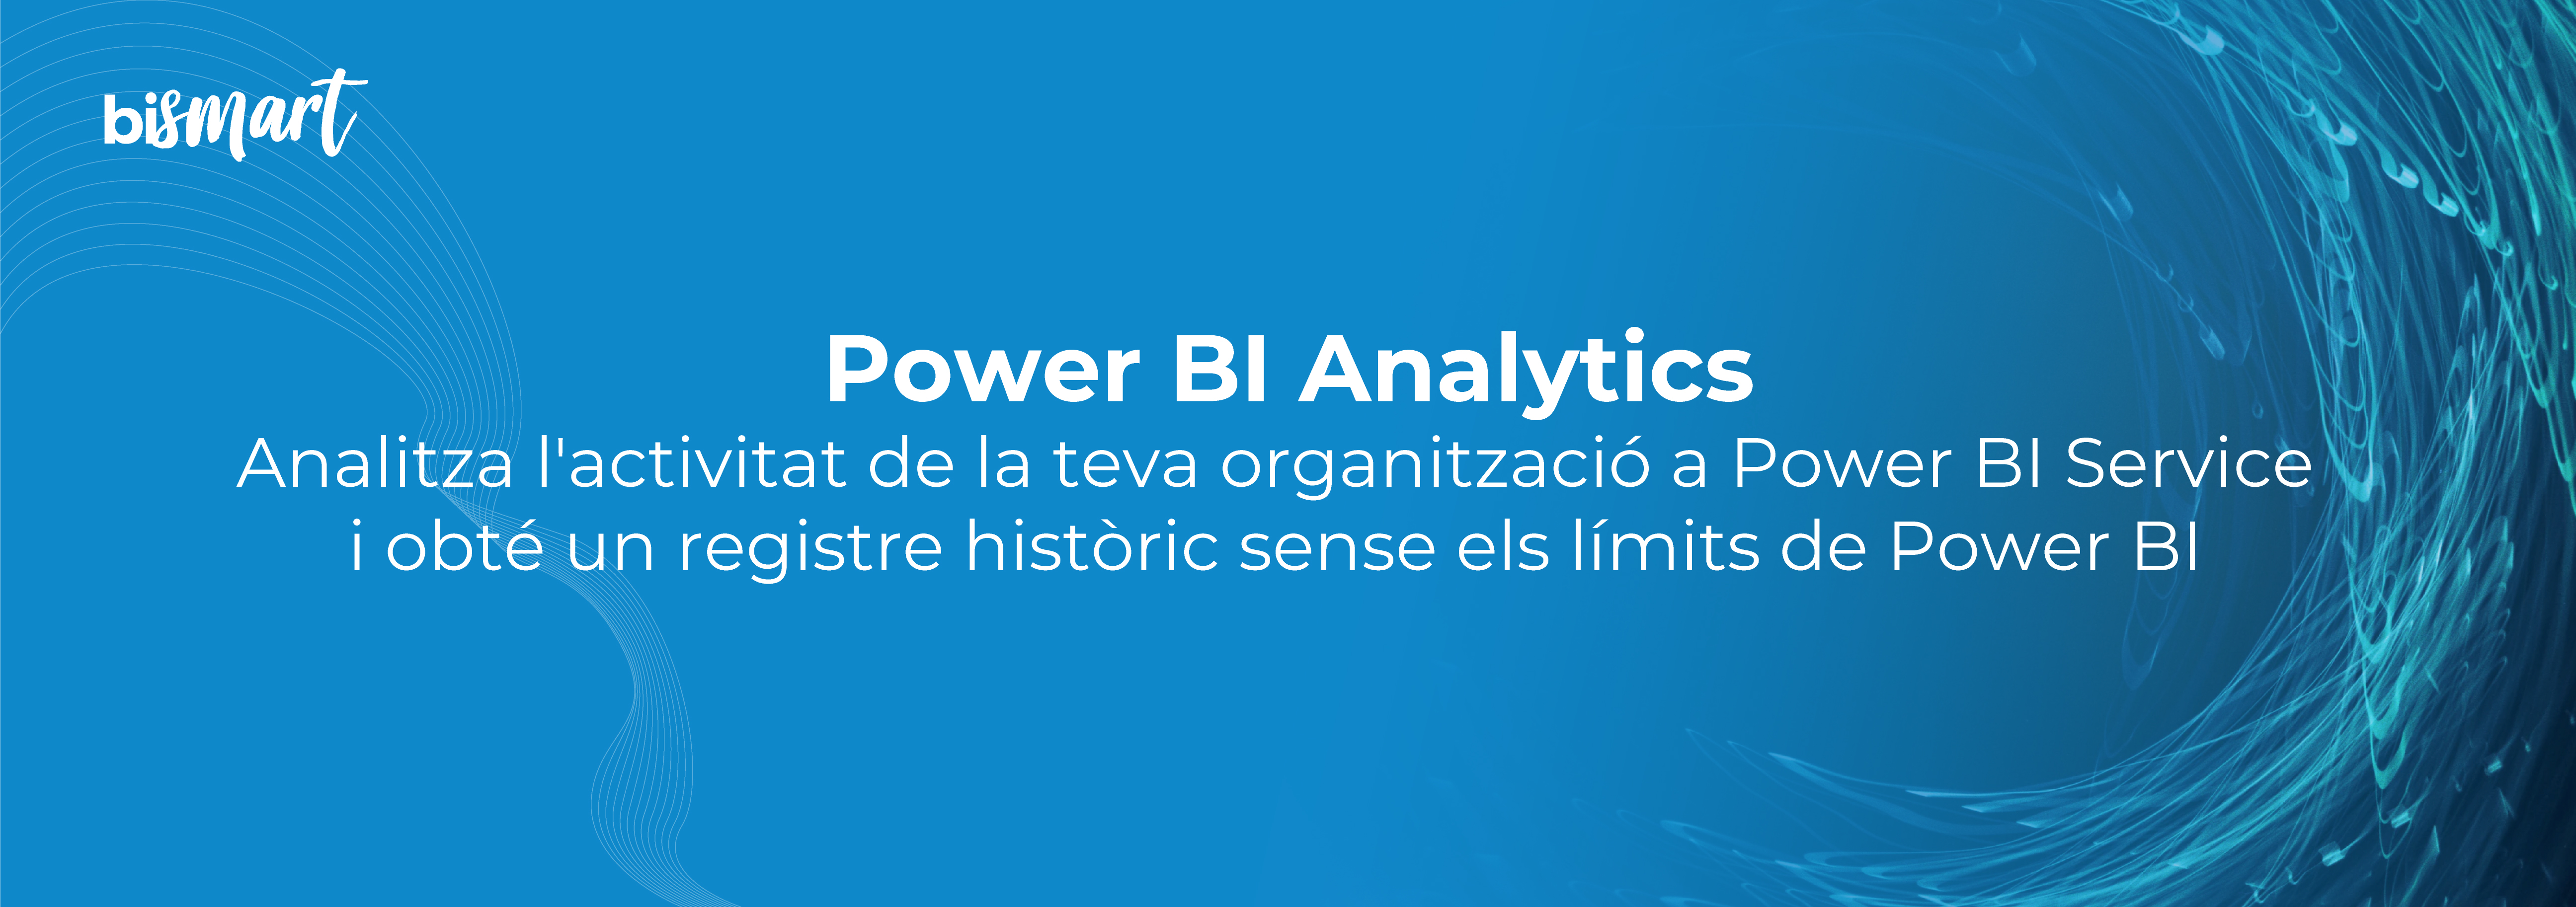 PowerBI-Analytics-CA-01